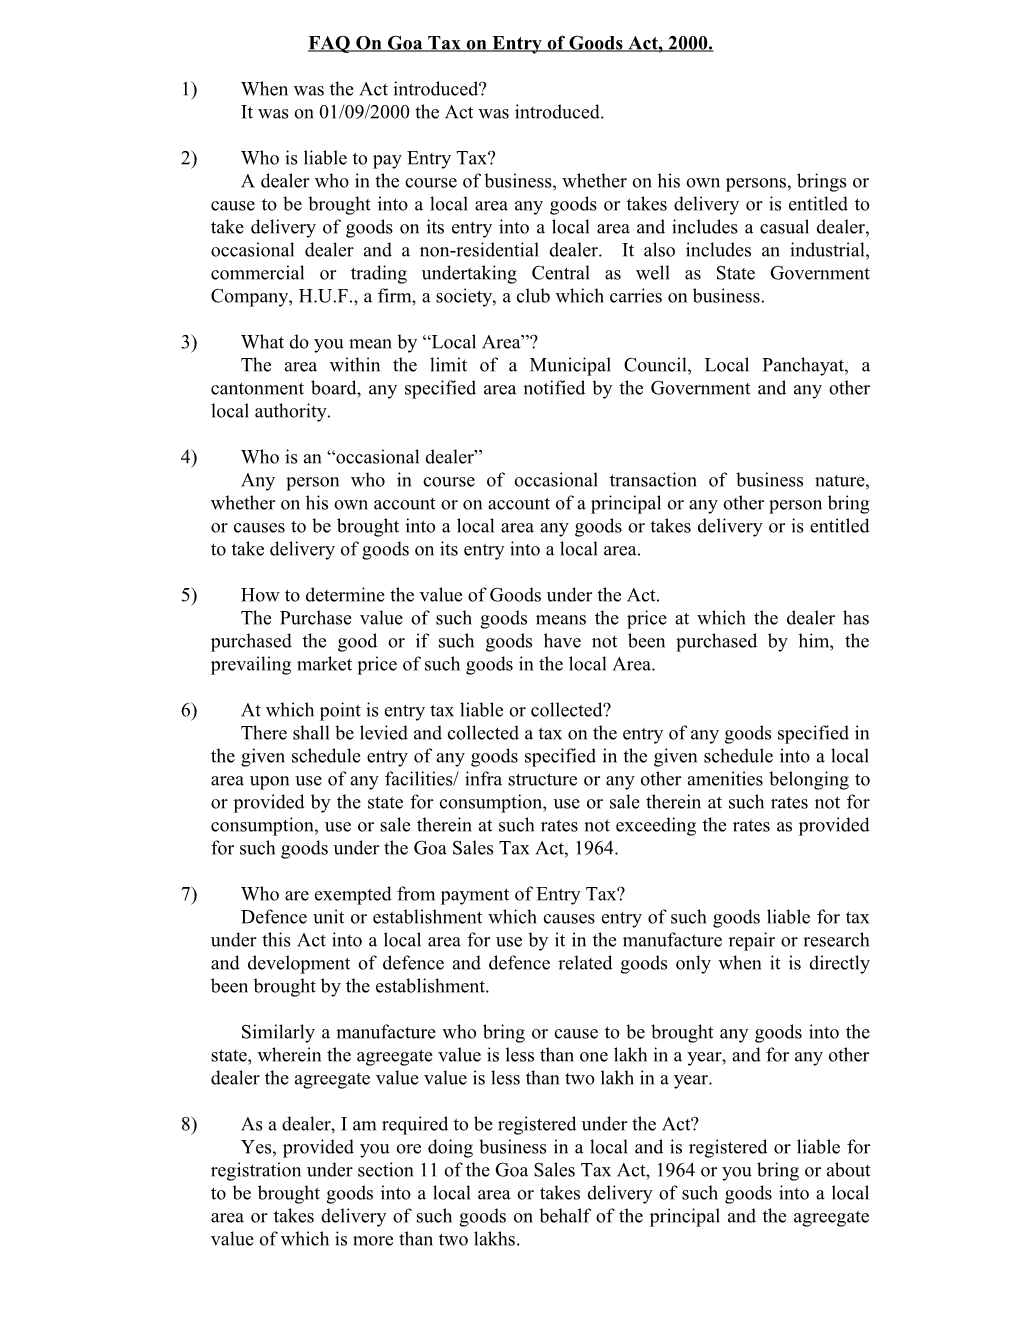 FAO Regarding Goa Tax on Entry of Goods Act, 2000